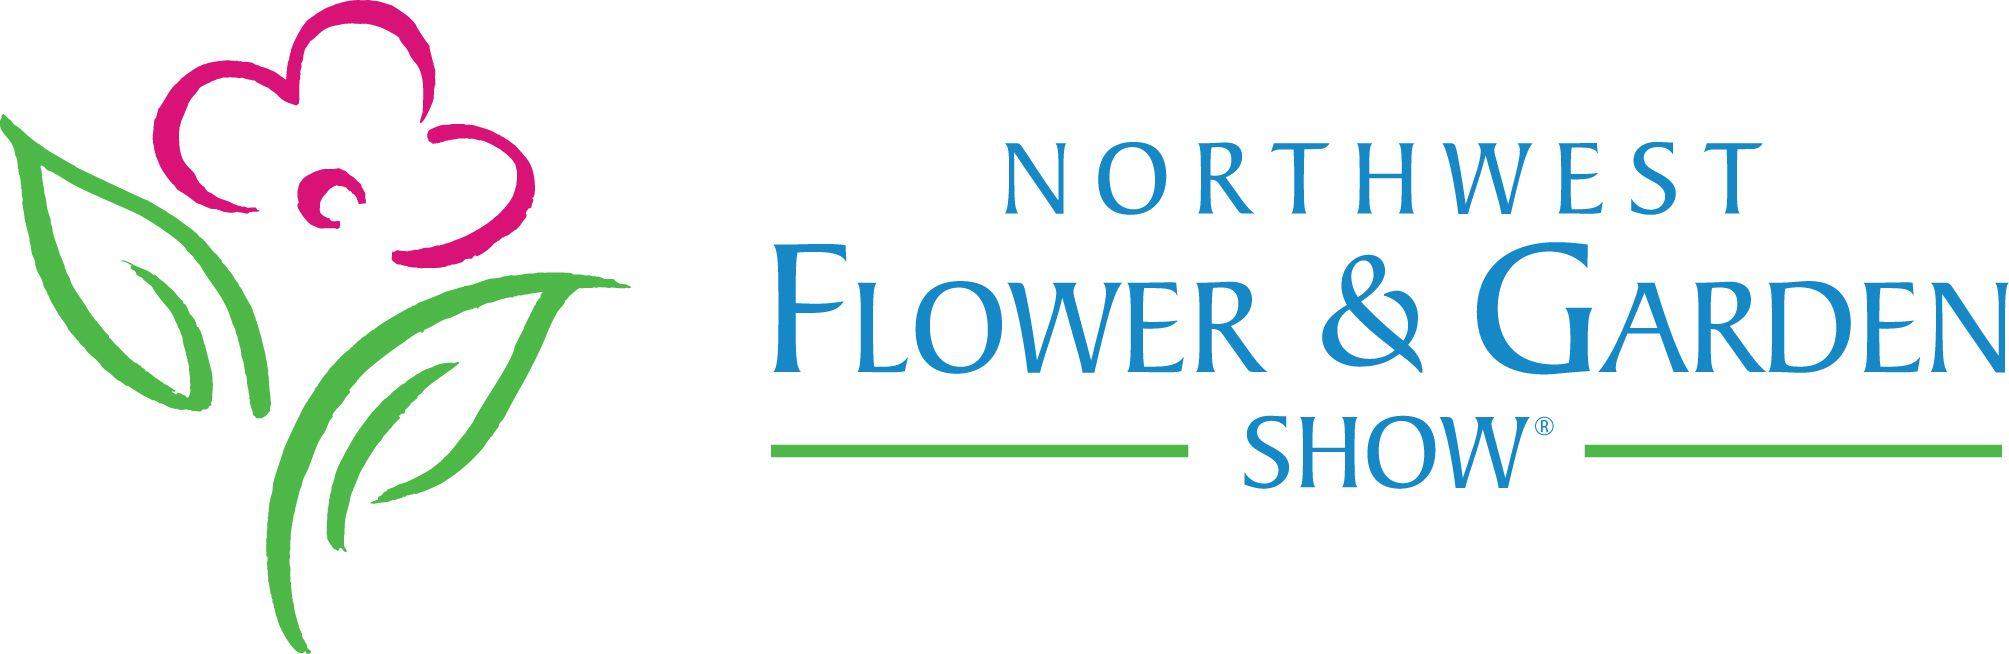 Flower Garden Logo - Visit Raintree Nursery at the Northwest Flower & Garden Show, Feb. 5 ...